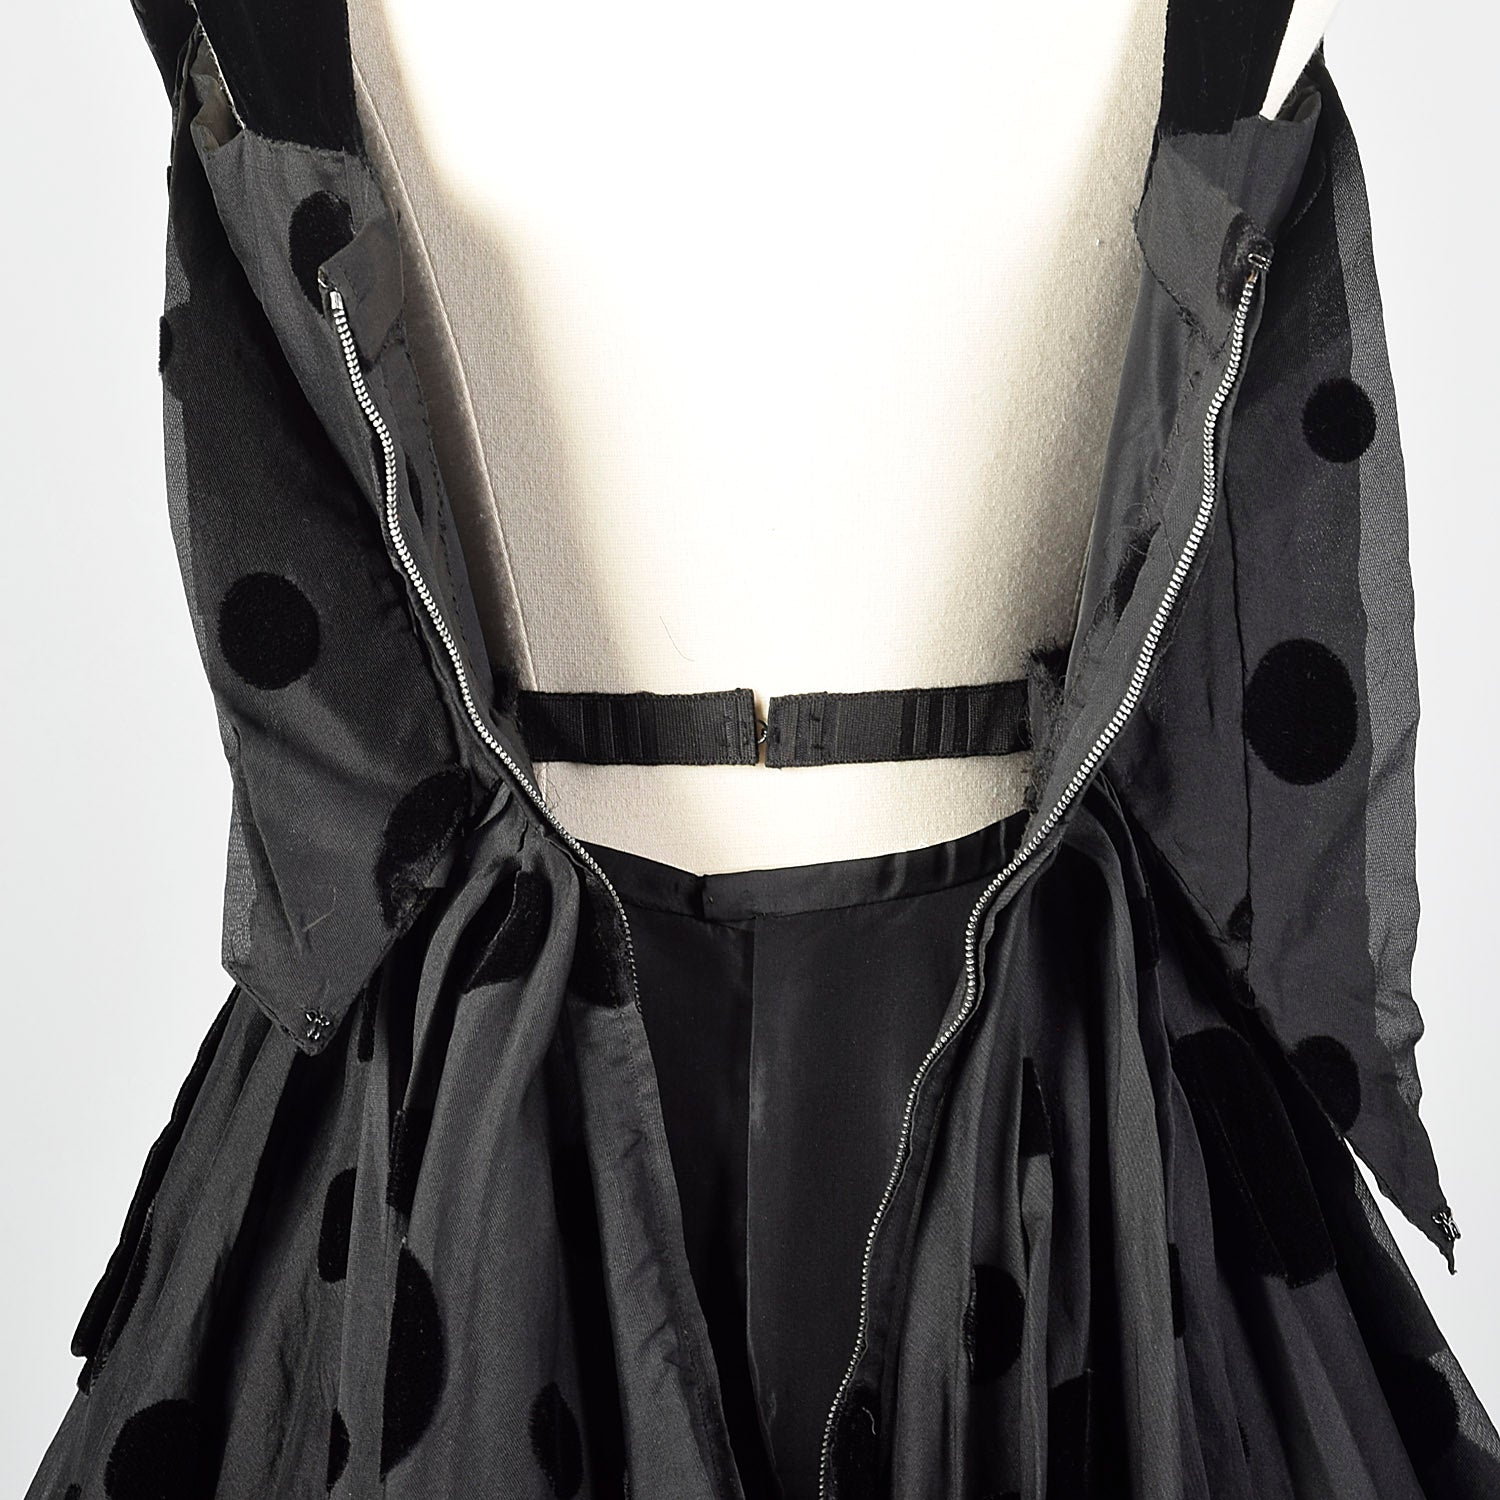 Tammy - 1954 French Dress